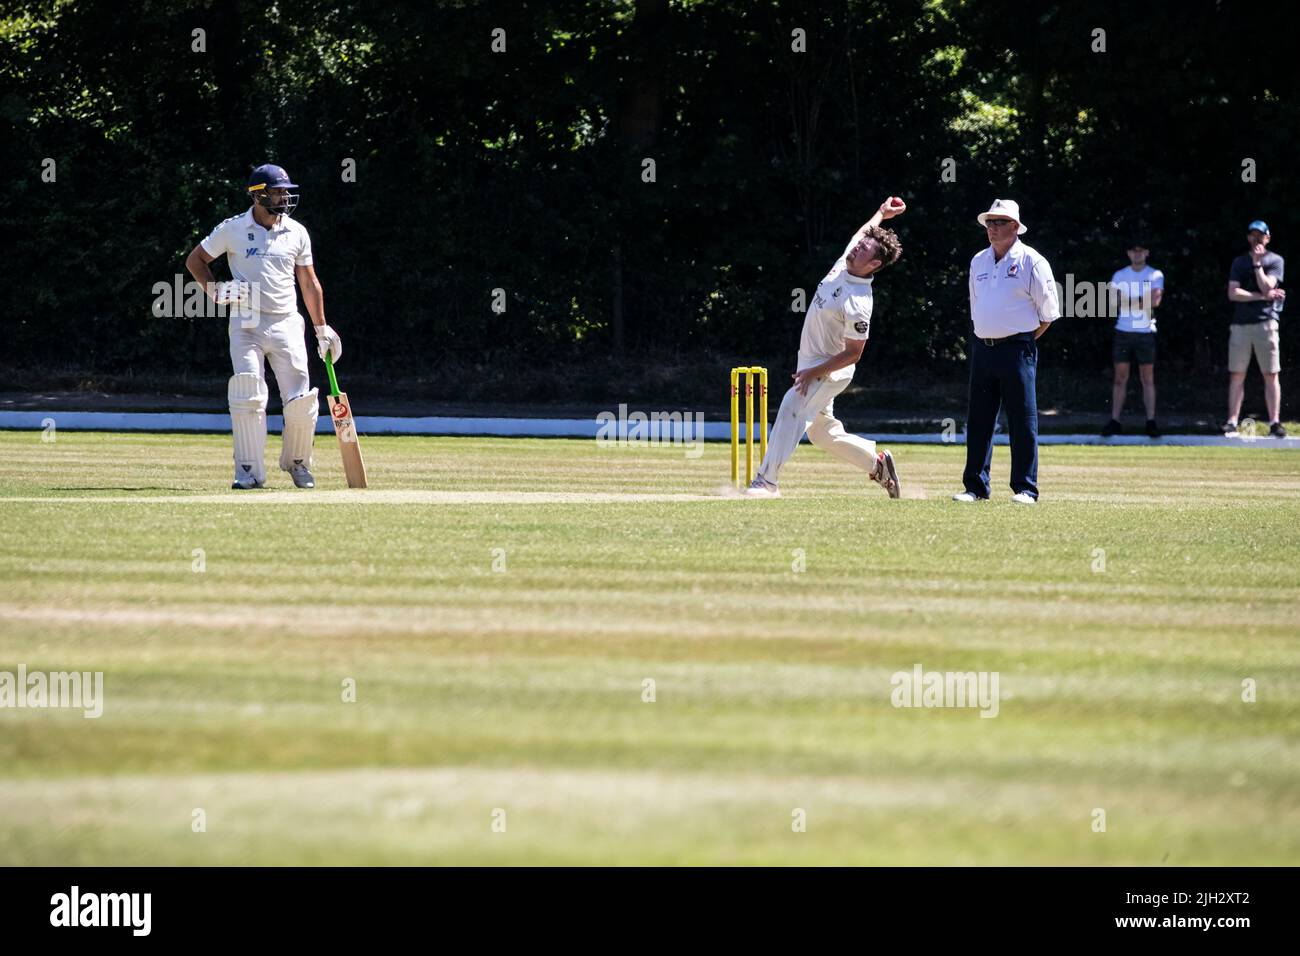 El jugador de bolos rápidos se acerca a los tocones al bateador en un partido de críquet de verano en Huddersfield, Yorkshire, Inglaterra Foto de stock